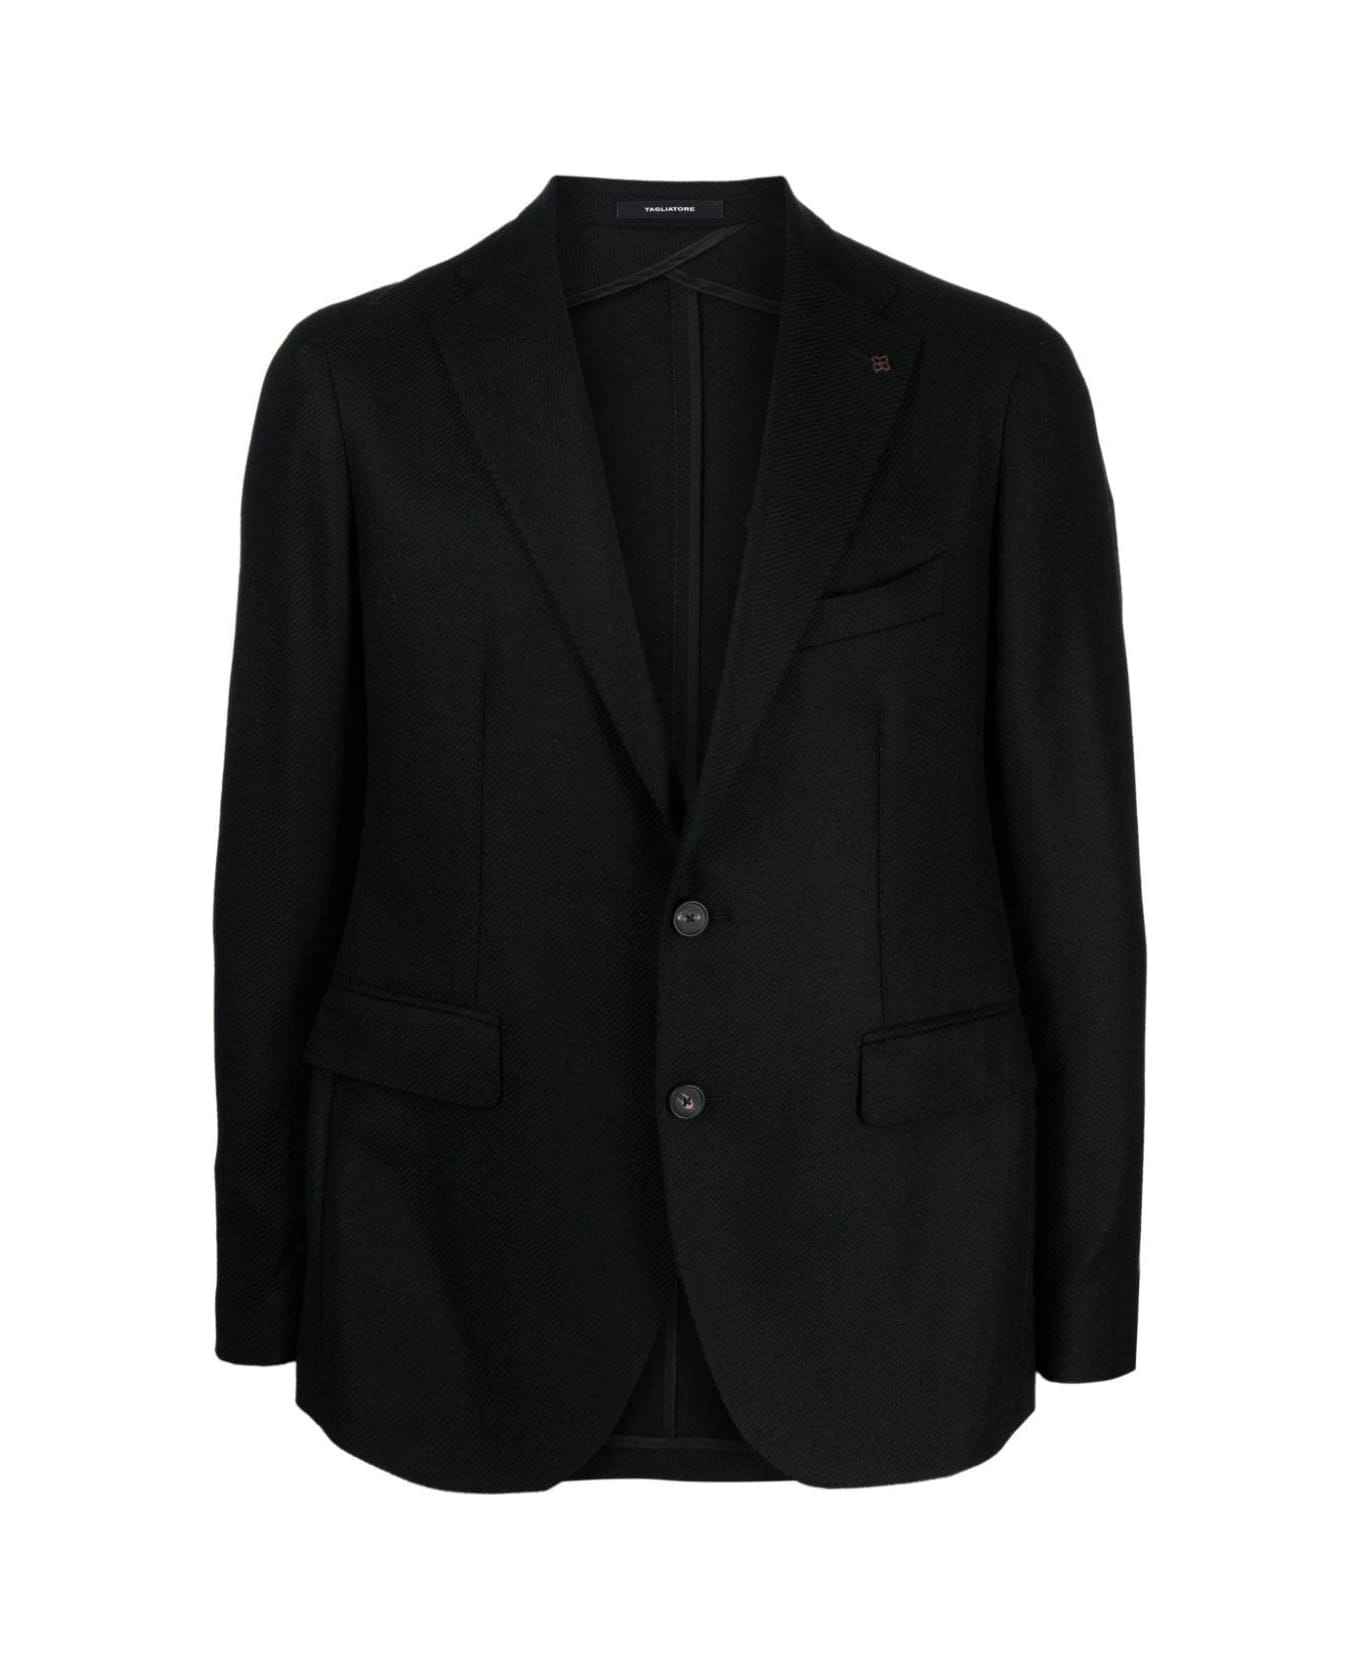 Tagliatore Classic Jacket - Black